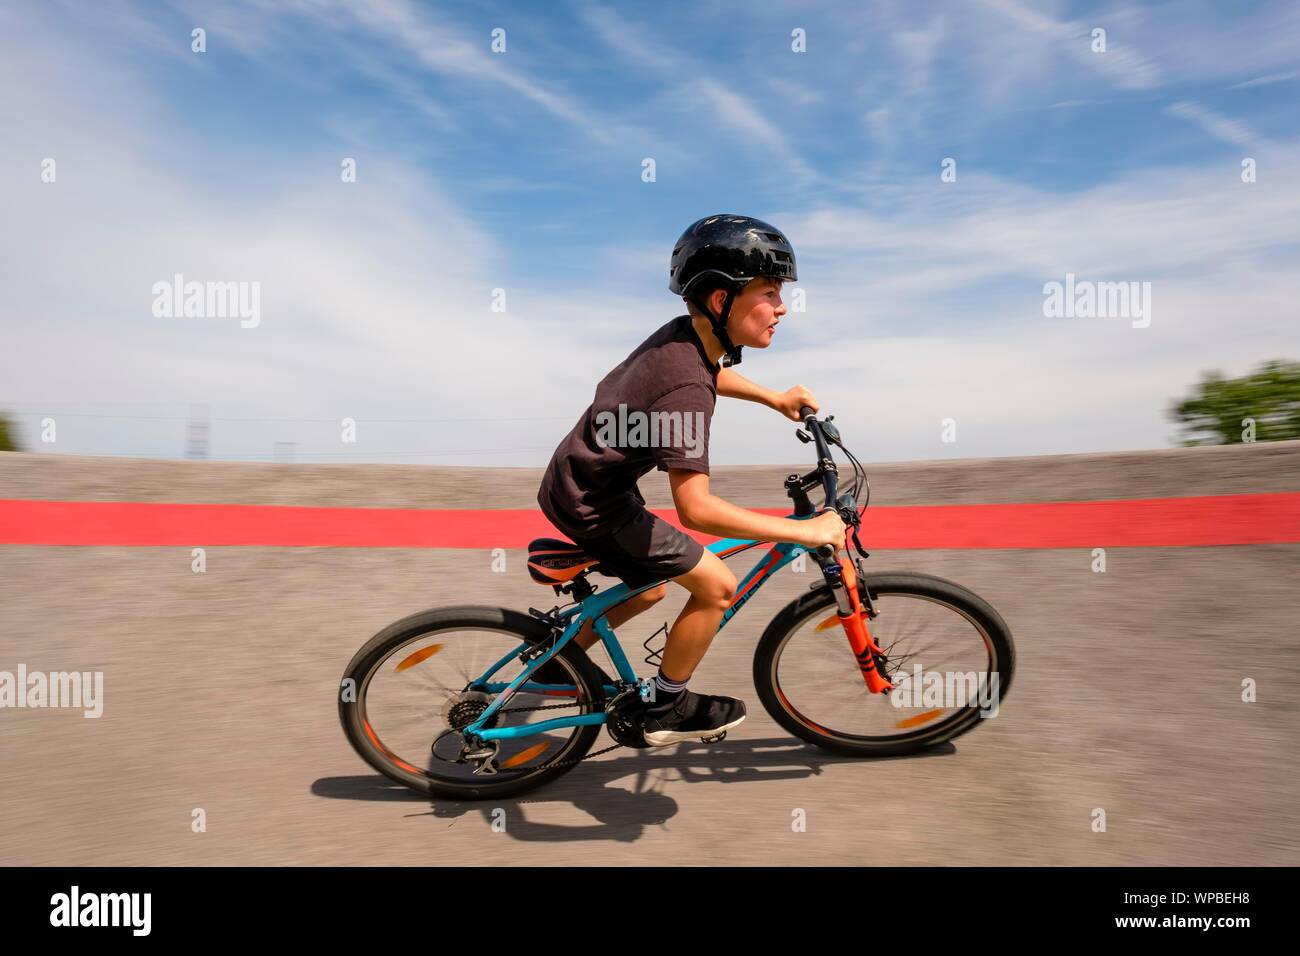 Enfant, garçon, 11 ans, école un vélo de montagne à travers une courbe raide dans une pompe piste, vélo de montagne, sentier Viehhausen, Salzbourg, Autriche Banque D'Images